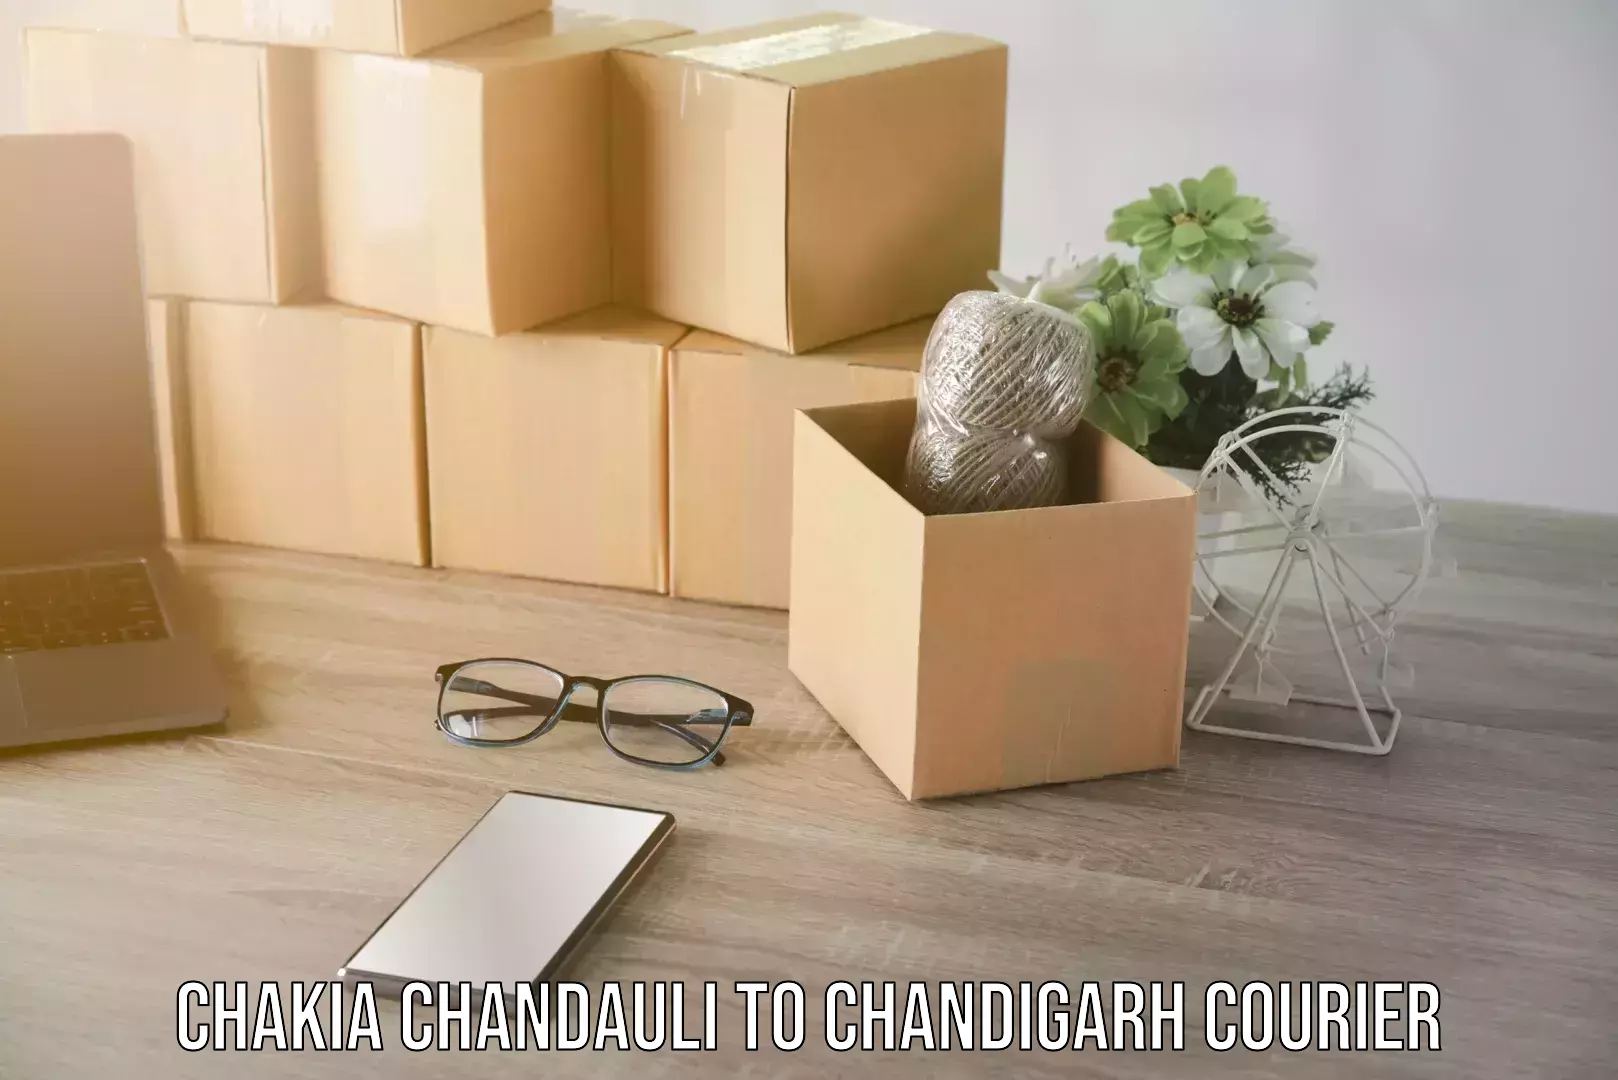 Tech-enabled shipping in Chakia Chandauli to Chandigarh